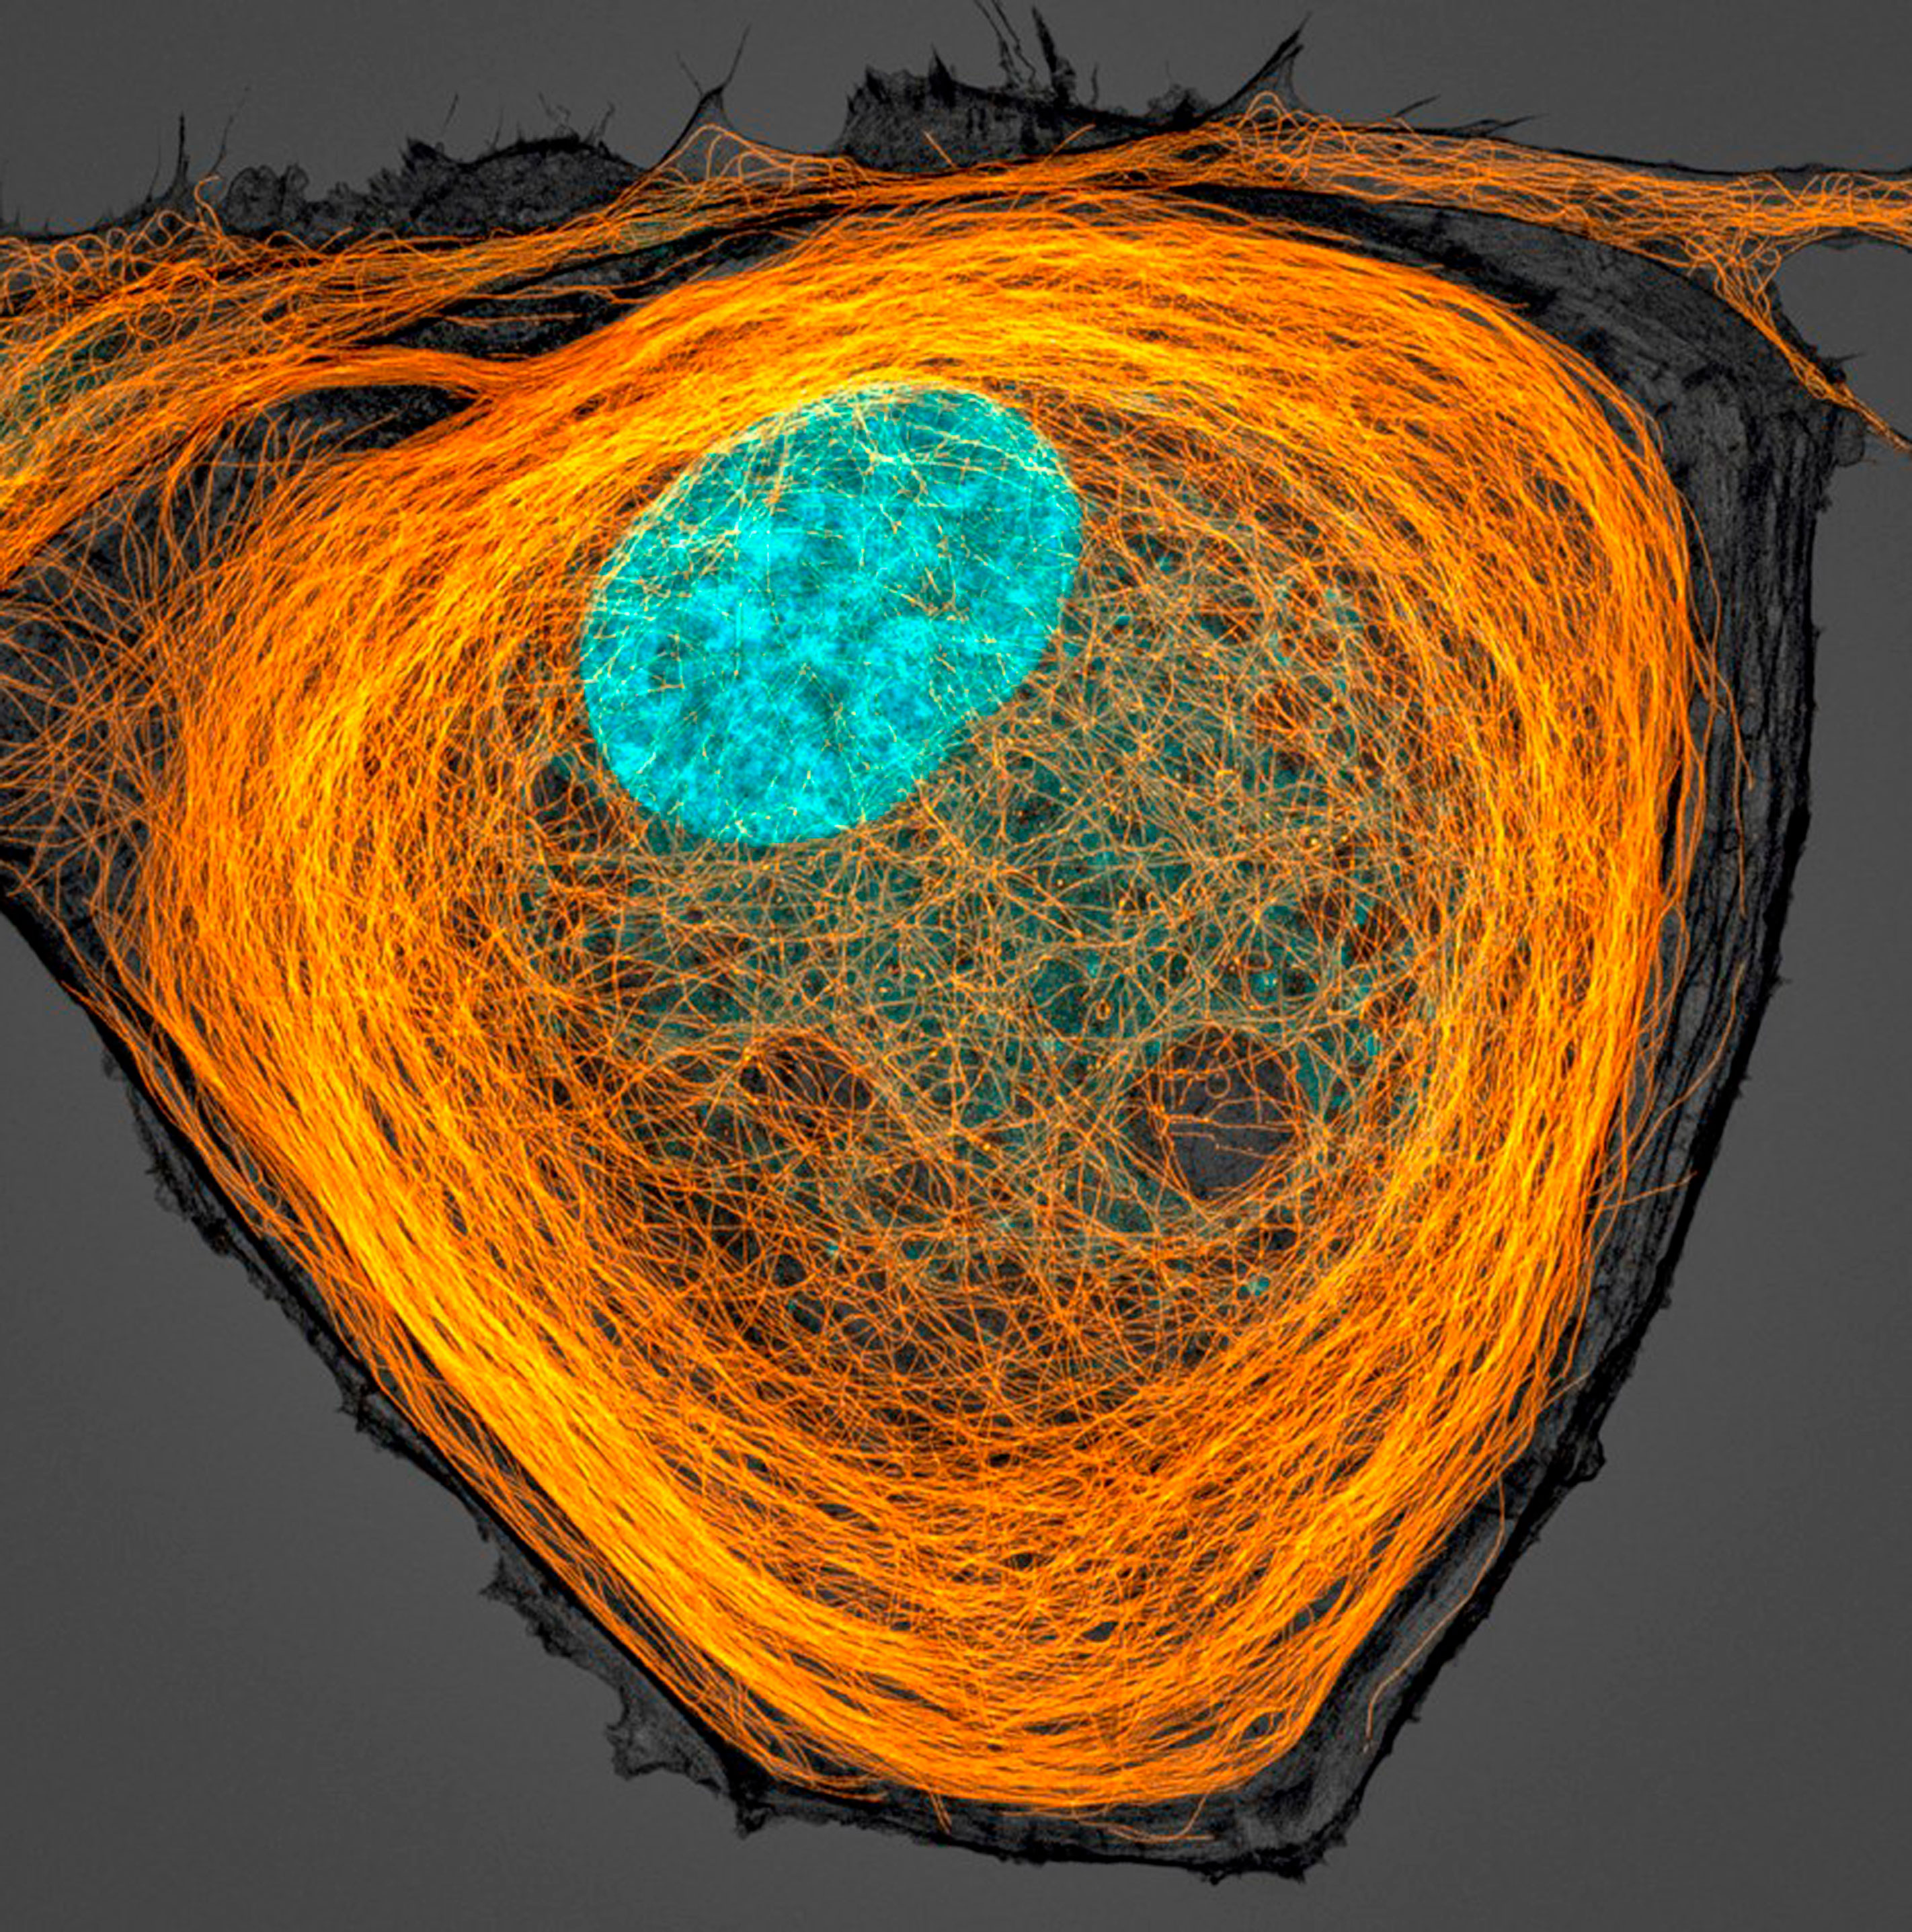 Микротрубочки (оранжевые) внутри клетки. Ядро показано голубым цветом